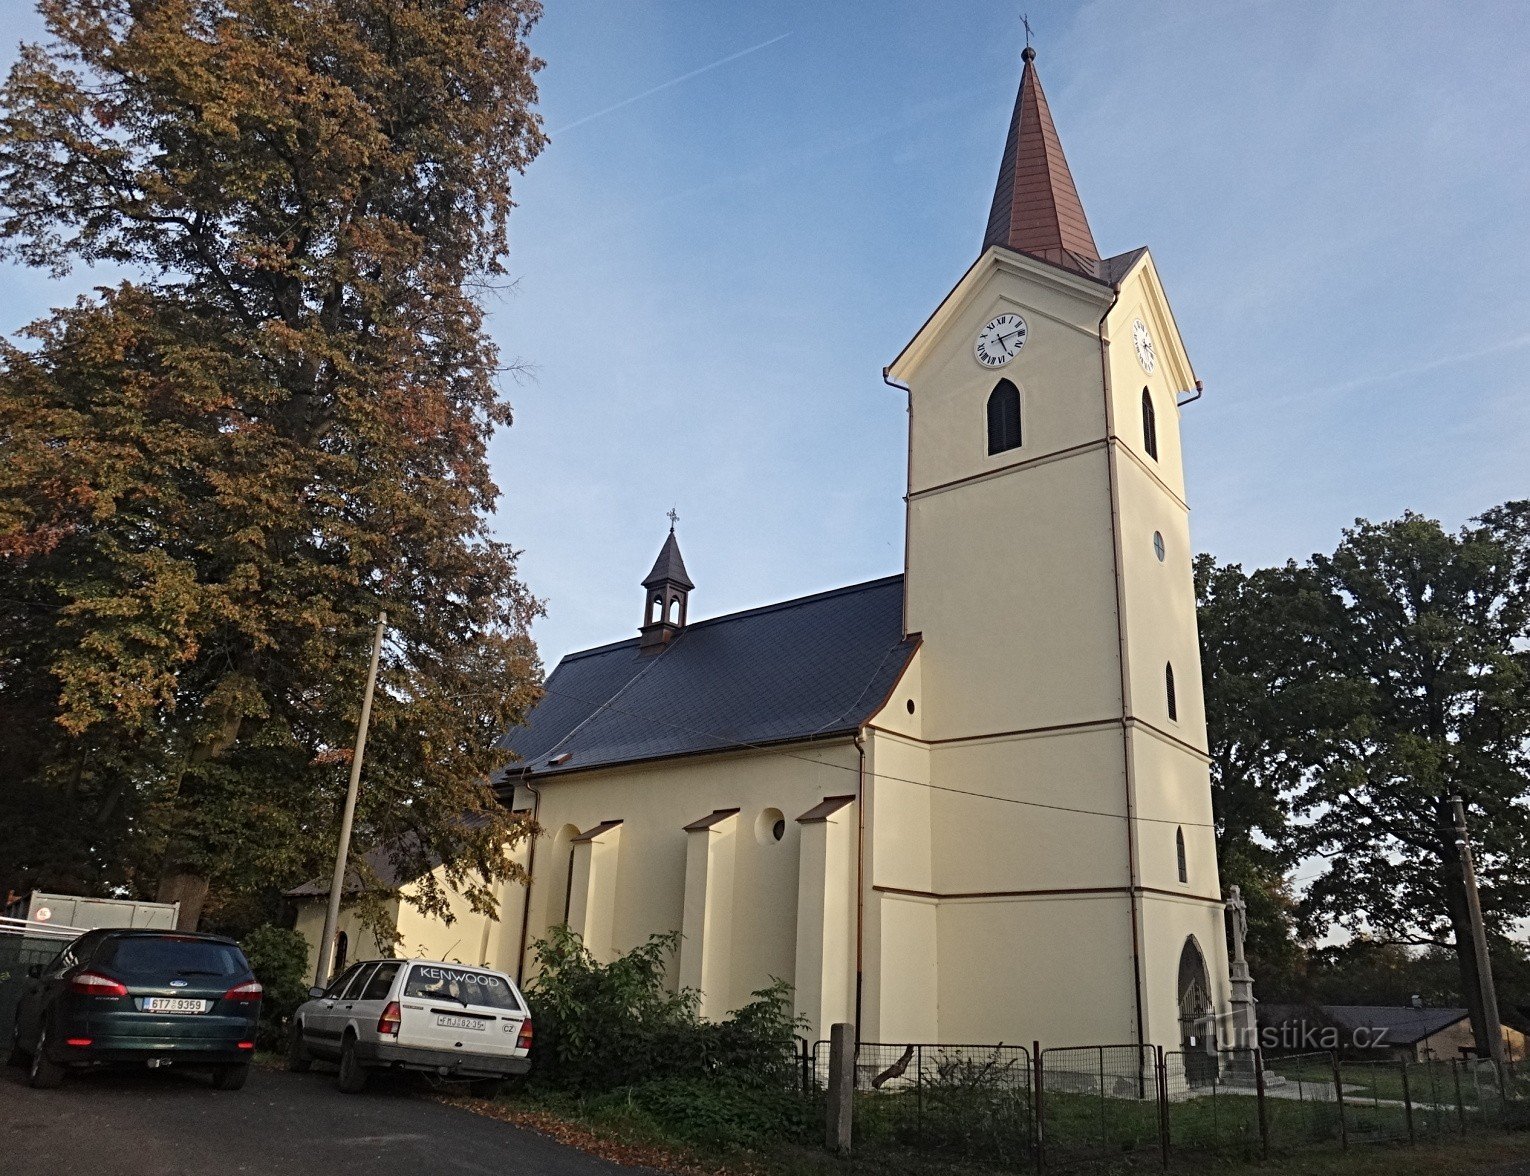 Nhìn từ phía Rychvald của nhà thờ St. Anne